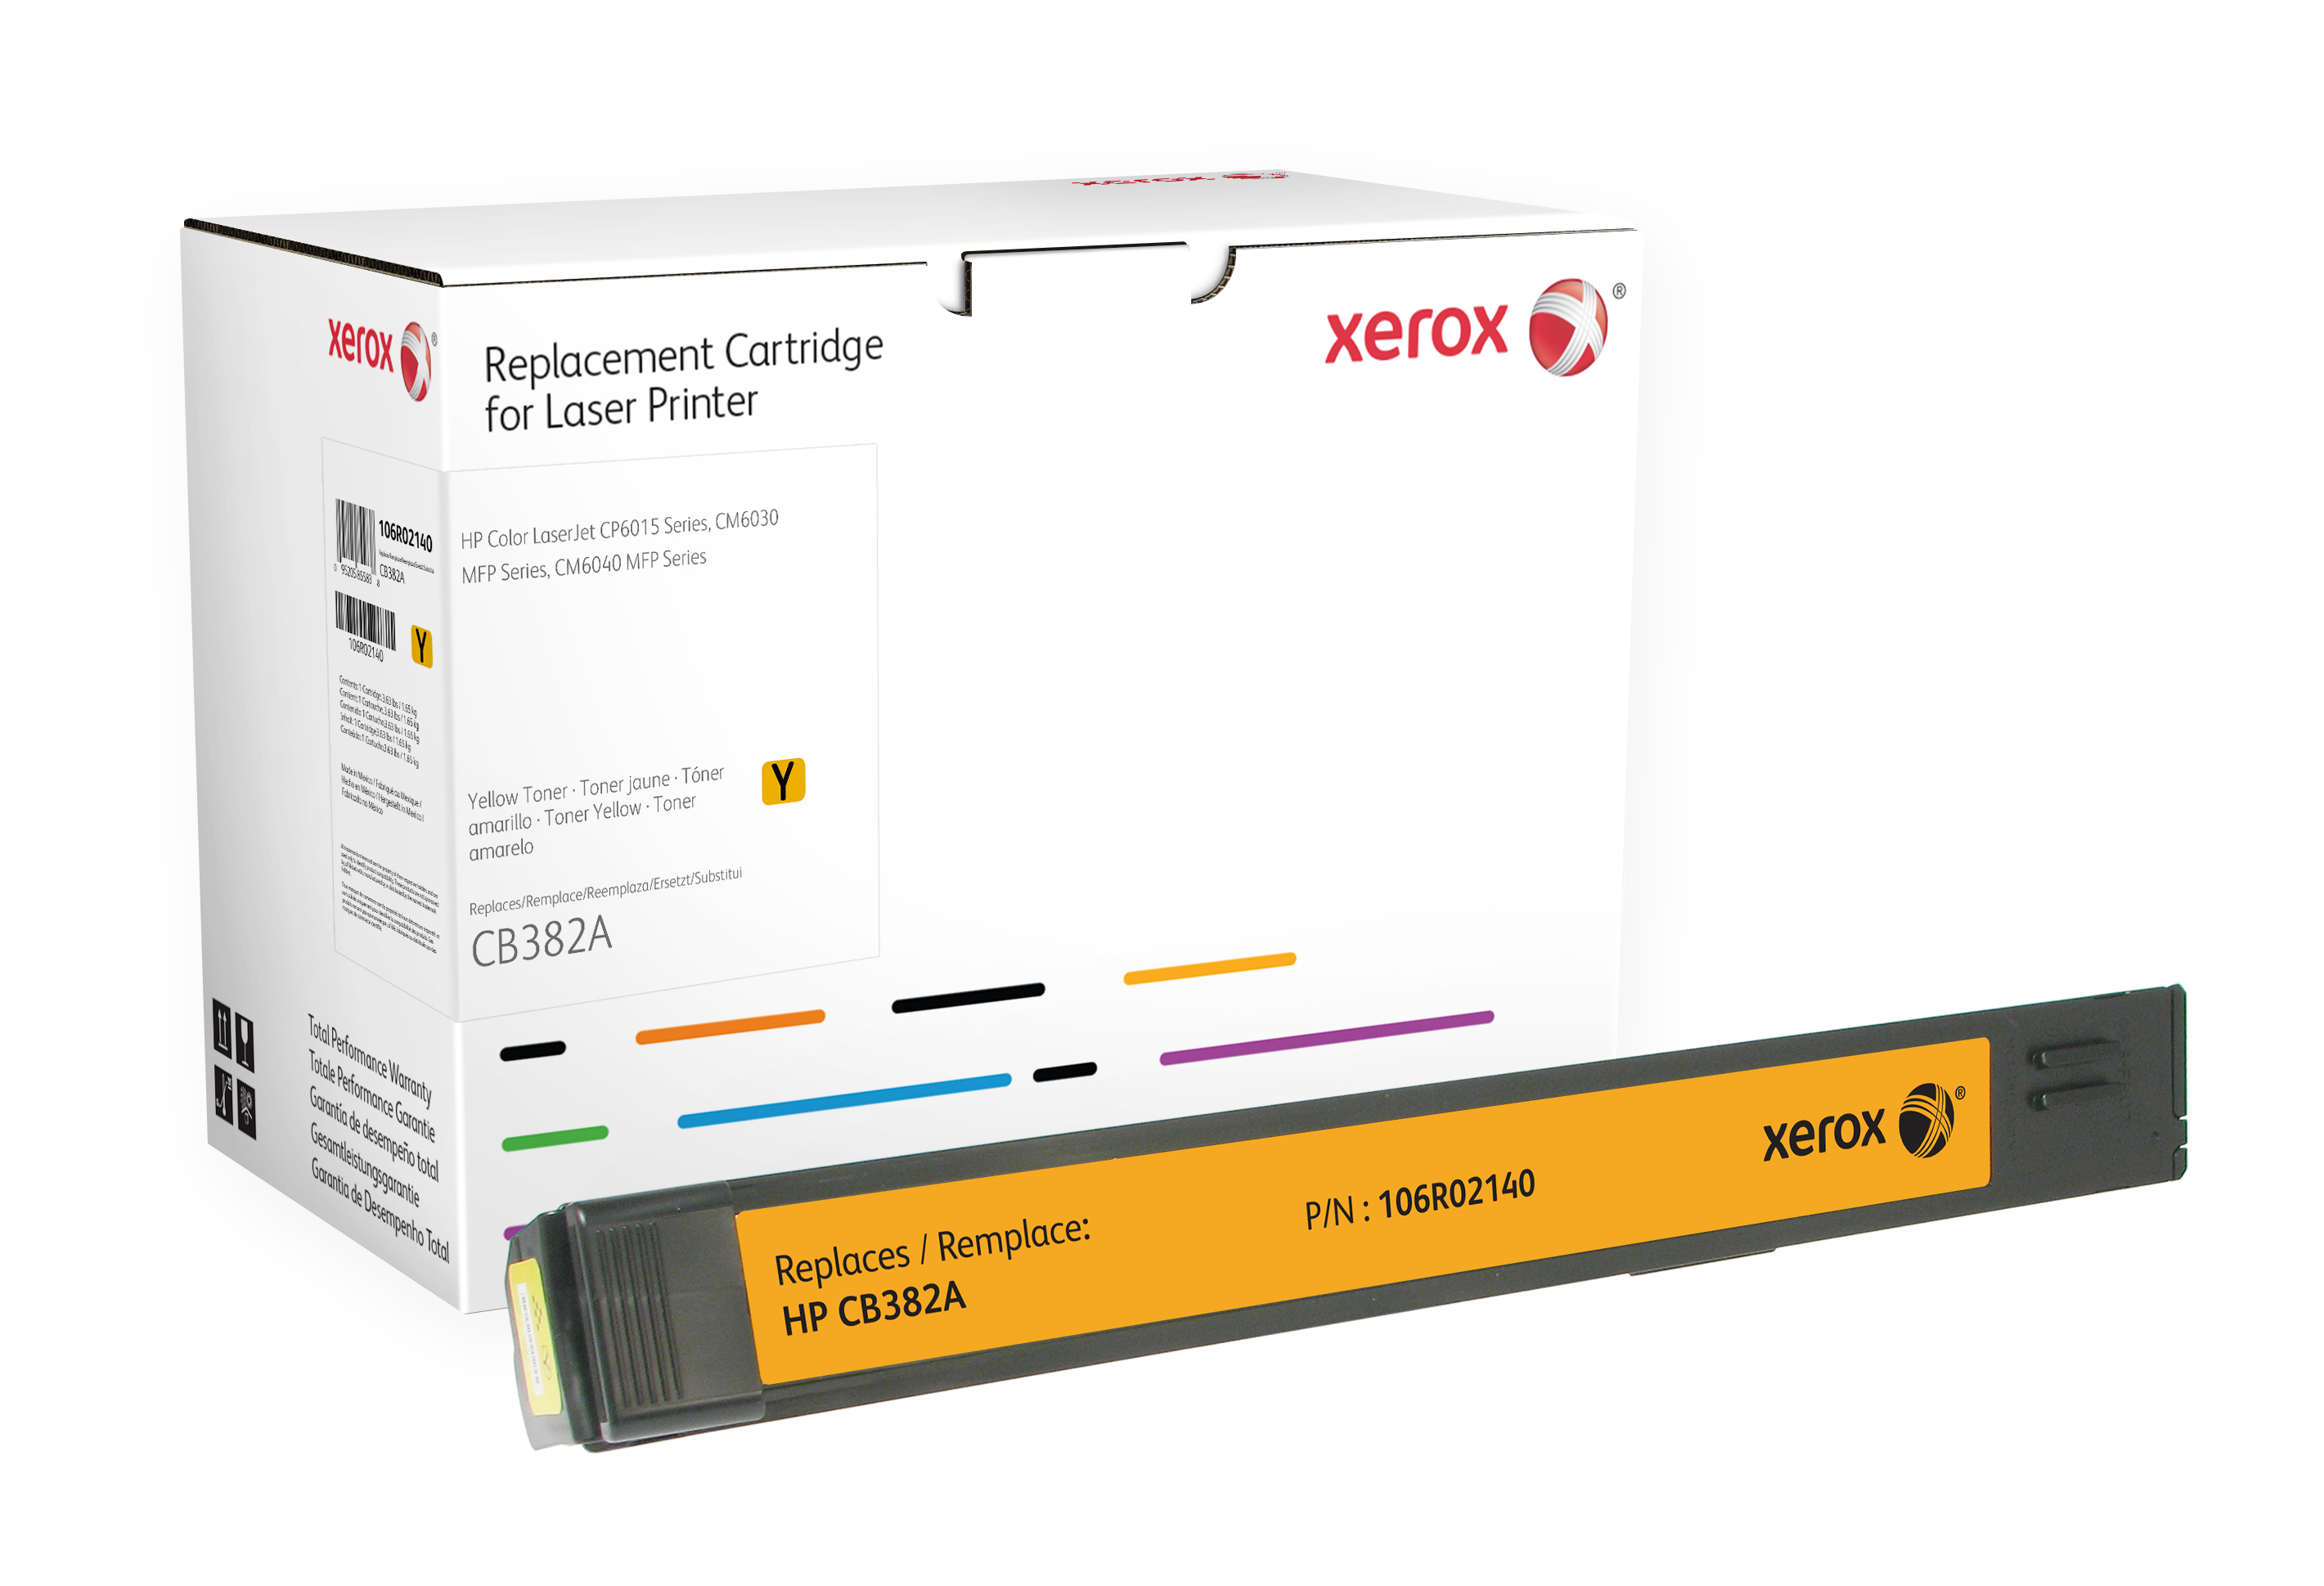 Xerox Gele toner cartridge. Gelijk aan HP CB382A. Compatibel met HP Colour LaserJet CM6030 MFP, Colour LaserJet CP6015